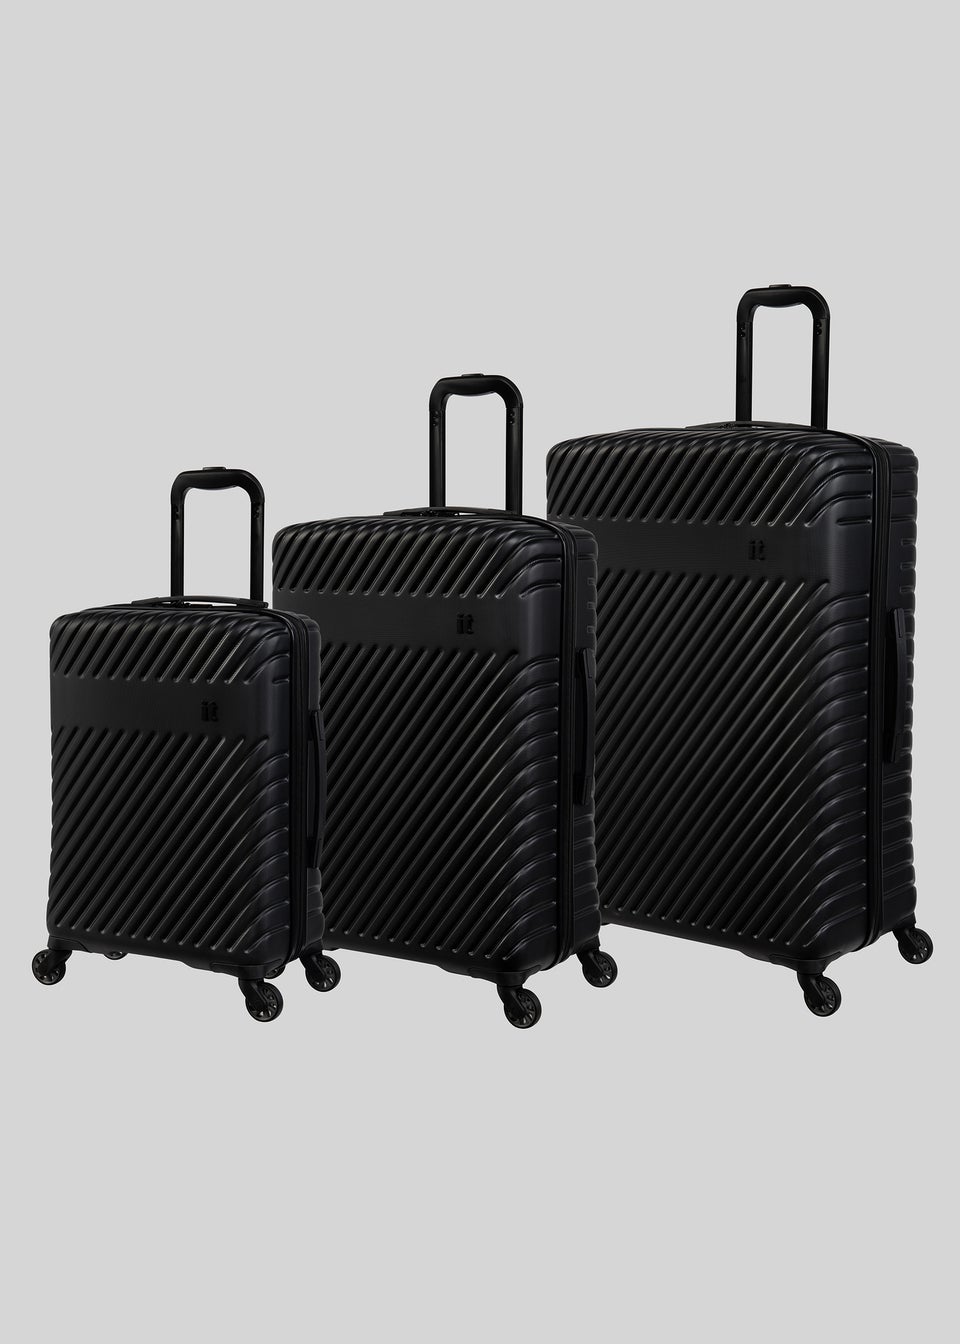 IT Luggage Black Hard Shell Suitcase